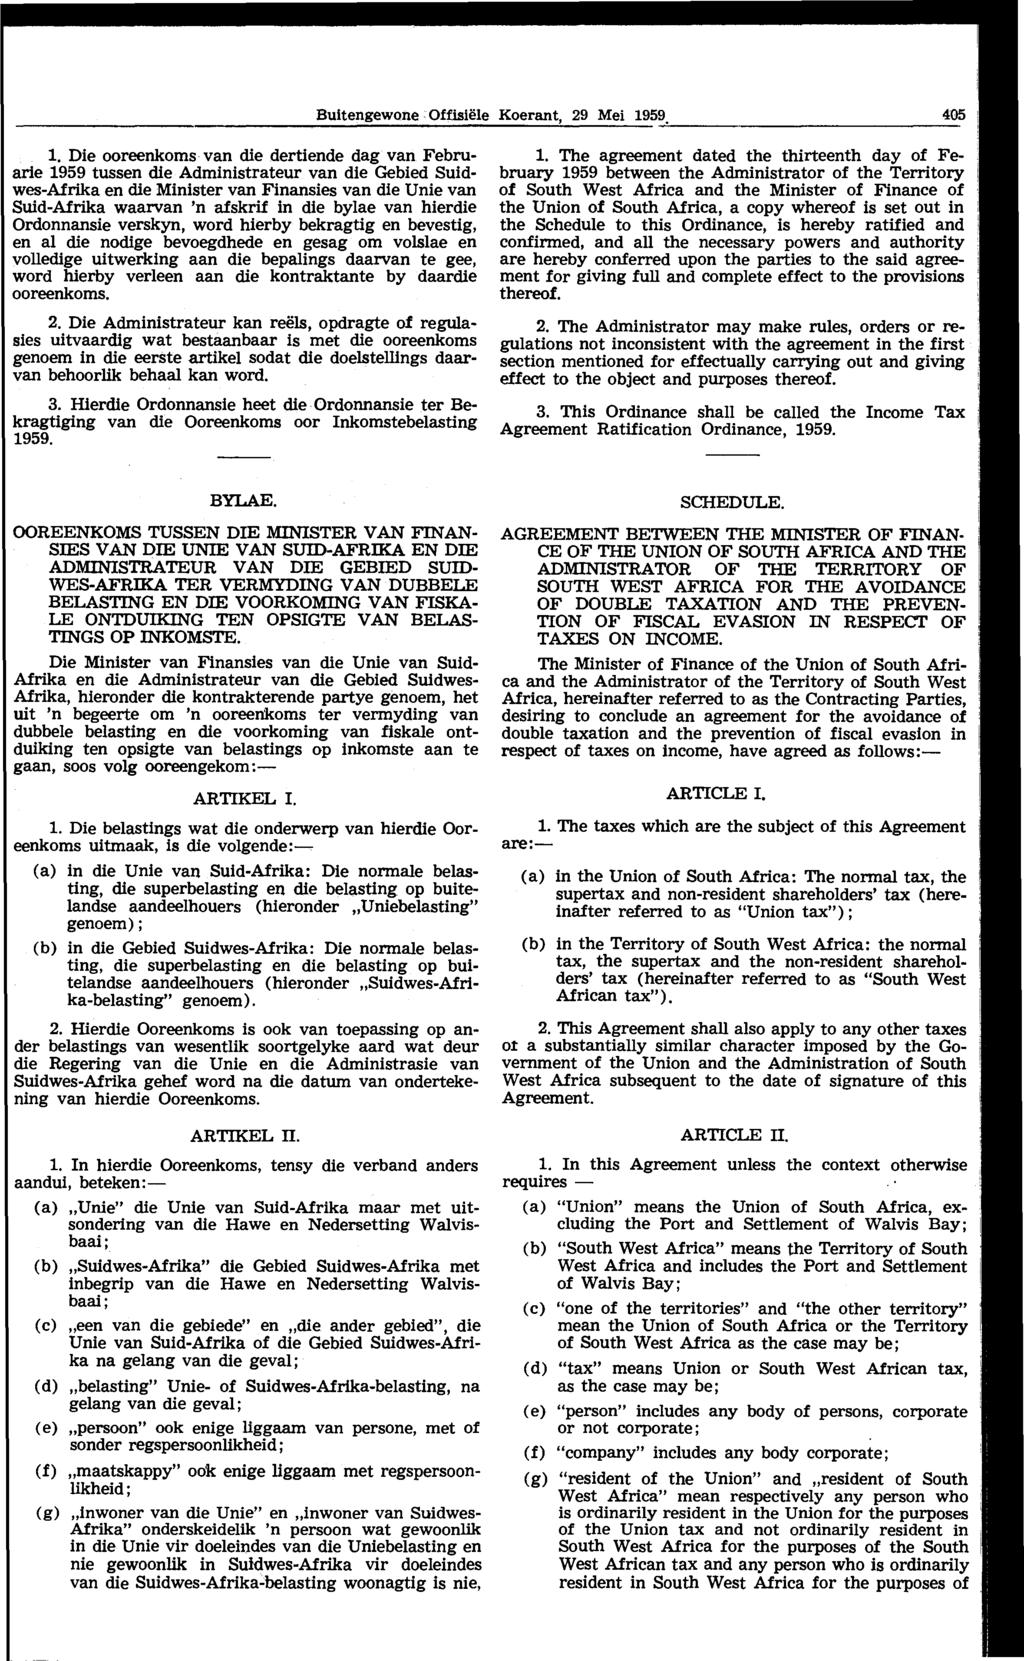 Buitengewone Offisii!le Koerant, 29 Mei 1959., 1.